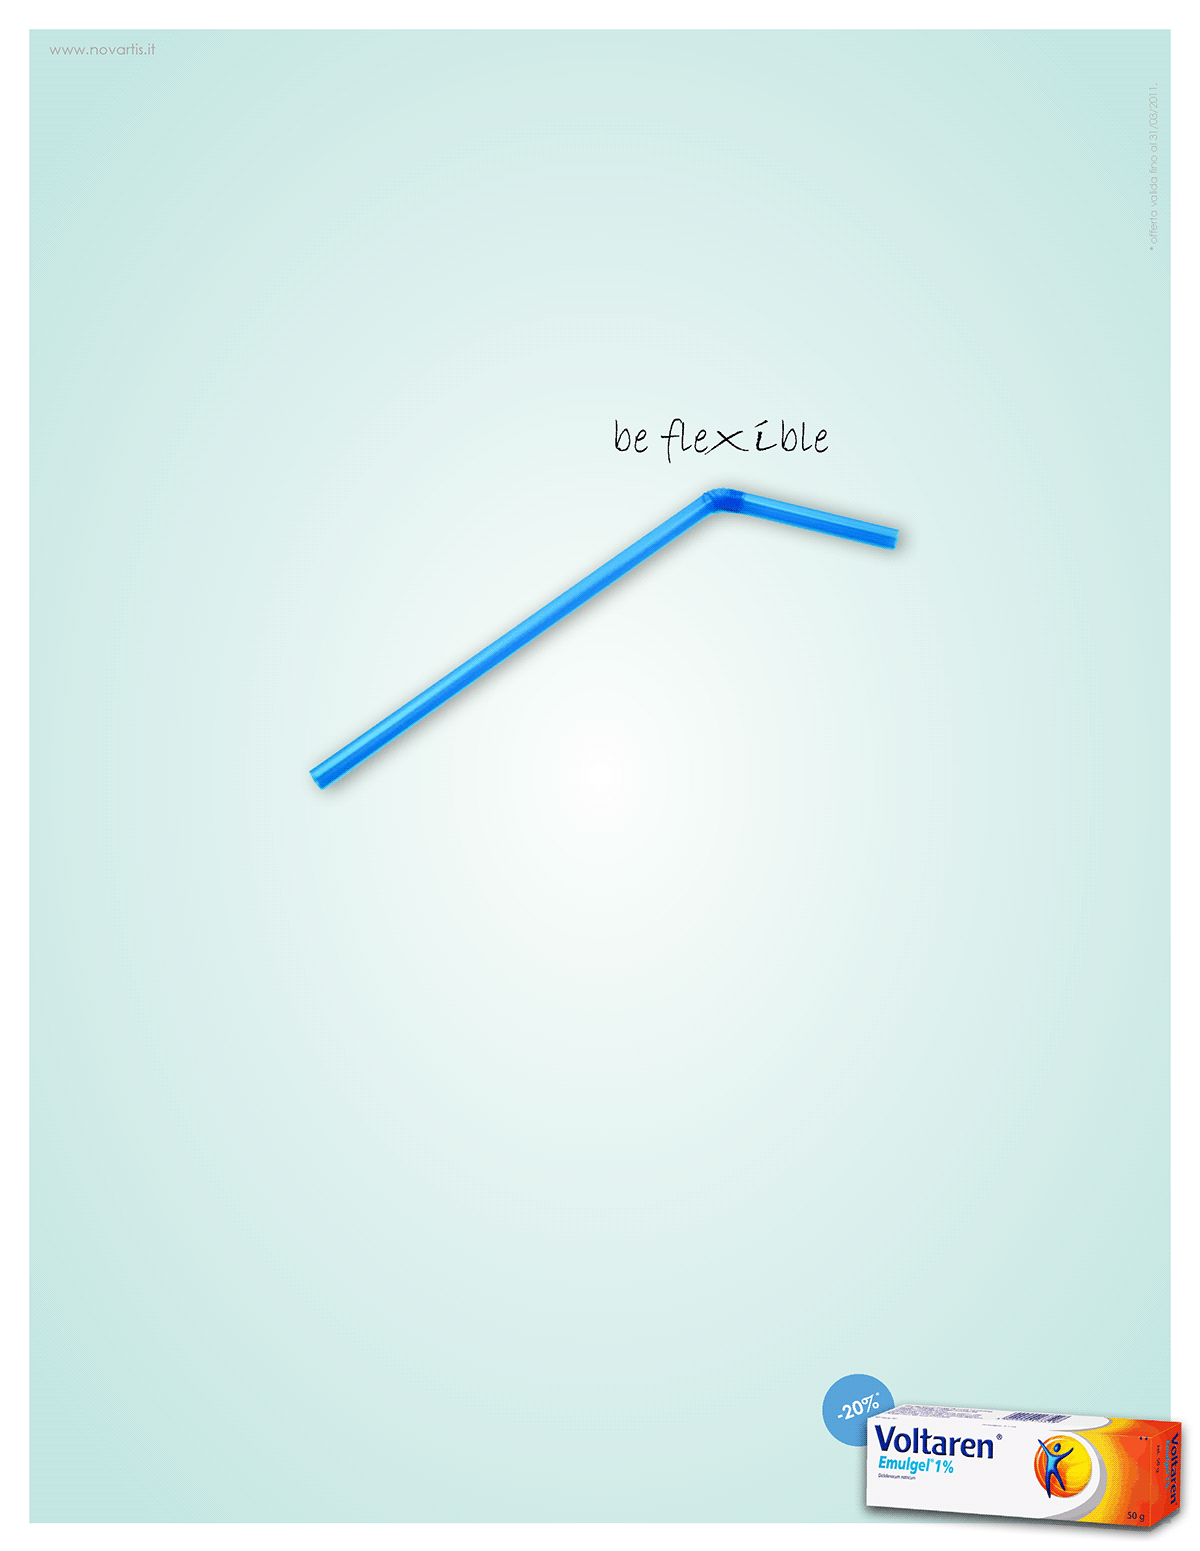 Voltaren cream campaign Limbo flexible ADV creative Creativity spring straw rubber flex